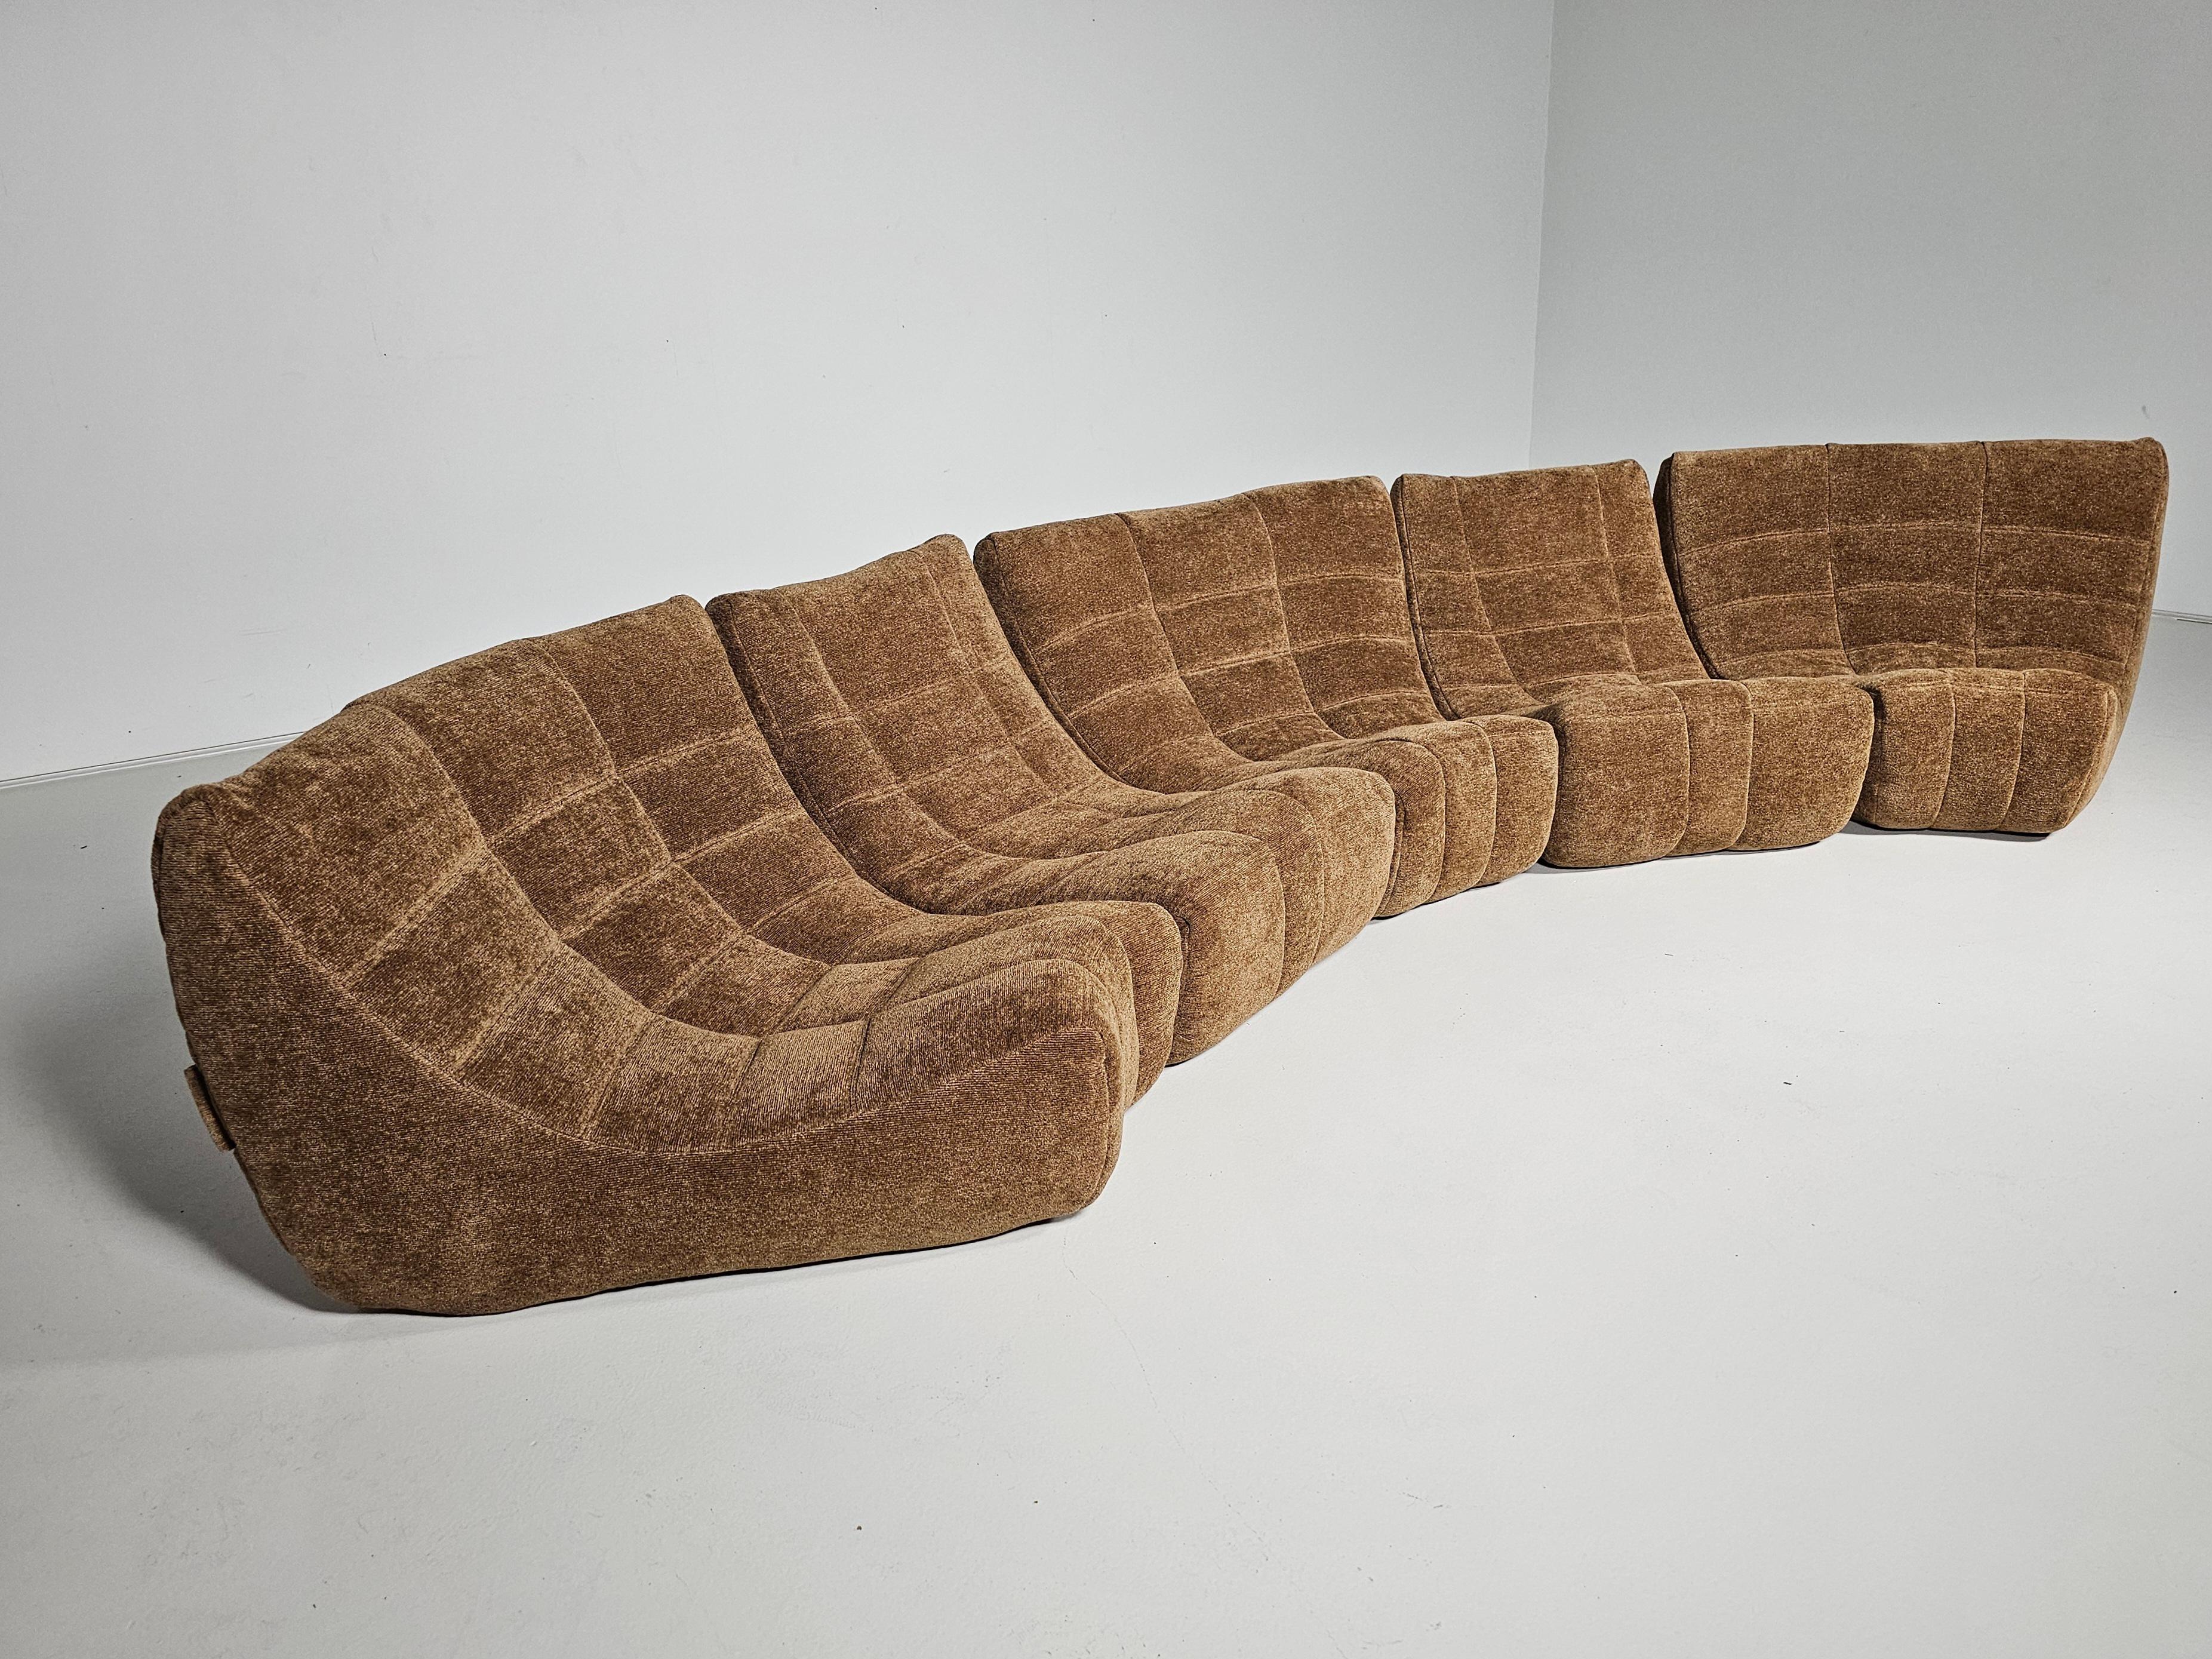 Das Sofa Gilda, das aus bequemen, geschwungenen Modulen besteht, ist ein seltenes Geschwisterchen des berühmten Sofas Toga von Michel Ducaroy. Ducaroy, der an der École Nationale Supérieure des Beaux-Arts in Lyon Bildhauerei studierte, beschäftigte